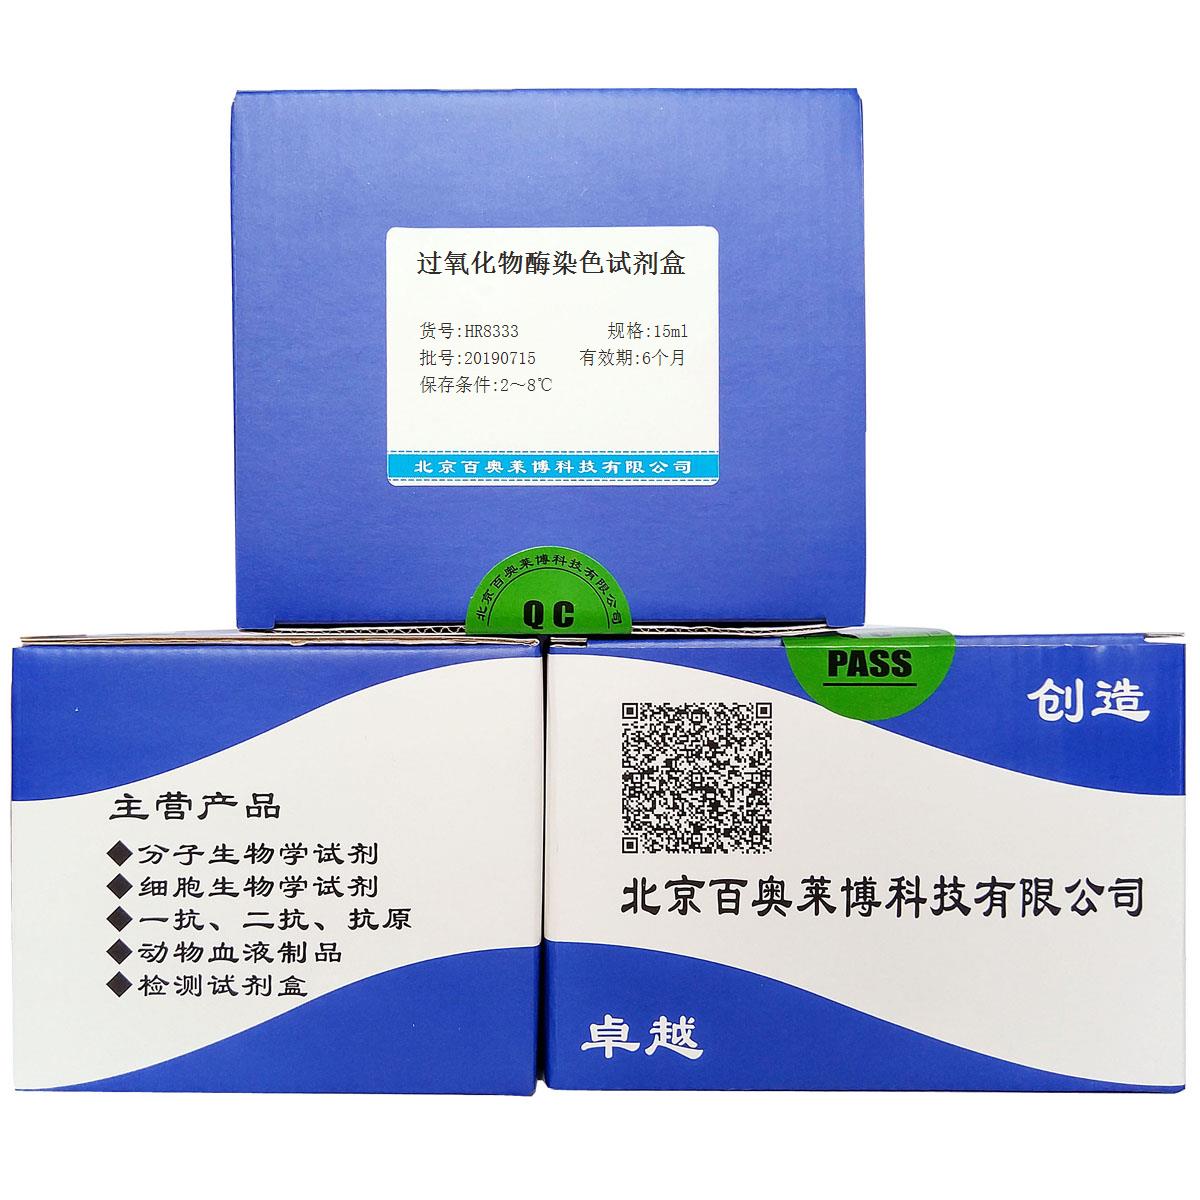 过氧化物酶染色试剂盒北京品牌